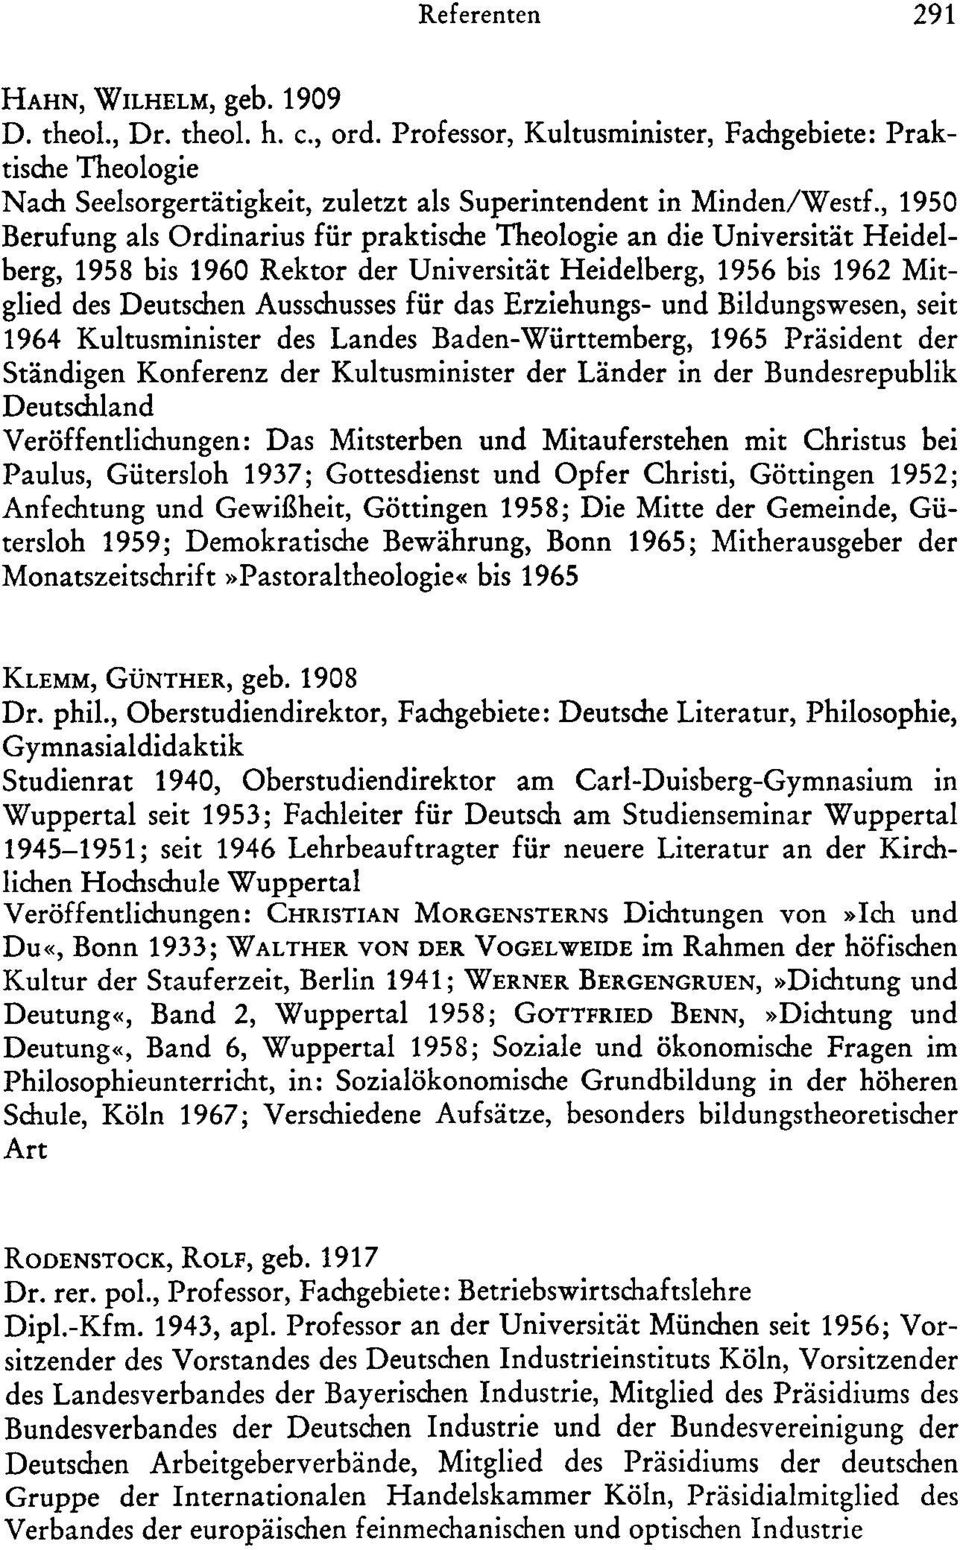 , 1950 Berufung als Ordinarius für praktische Theologie an die Universität Heidelberg, 1958 bis 1960 Rektor der Universität Heidelberg, 1956 bis 1962 Mitglied des Deutschen Aussc:husses für das